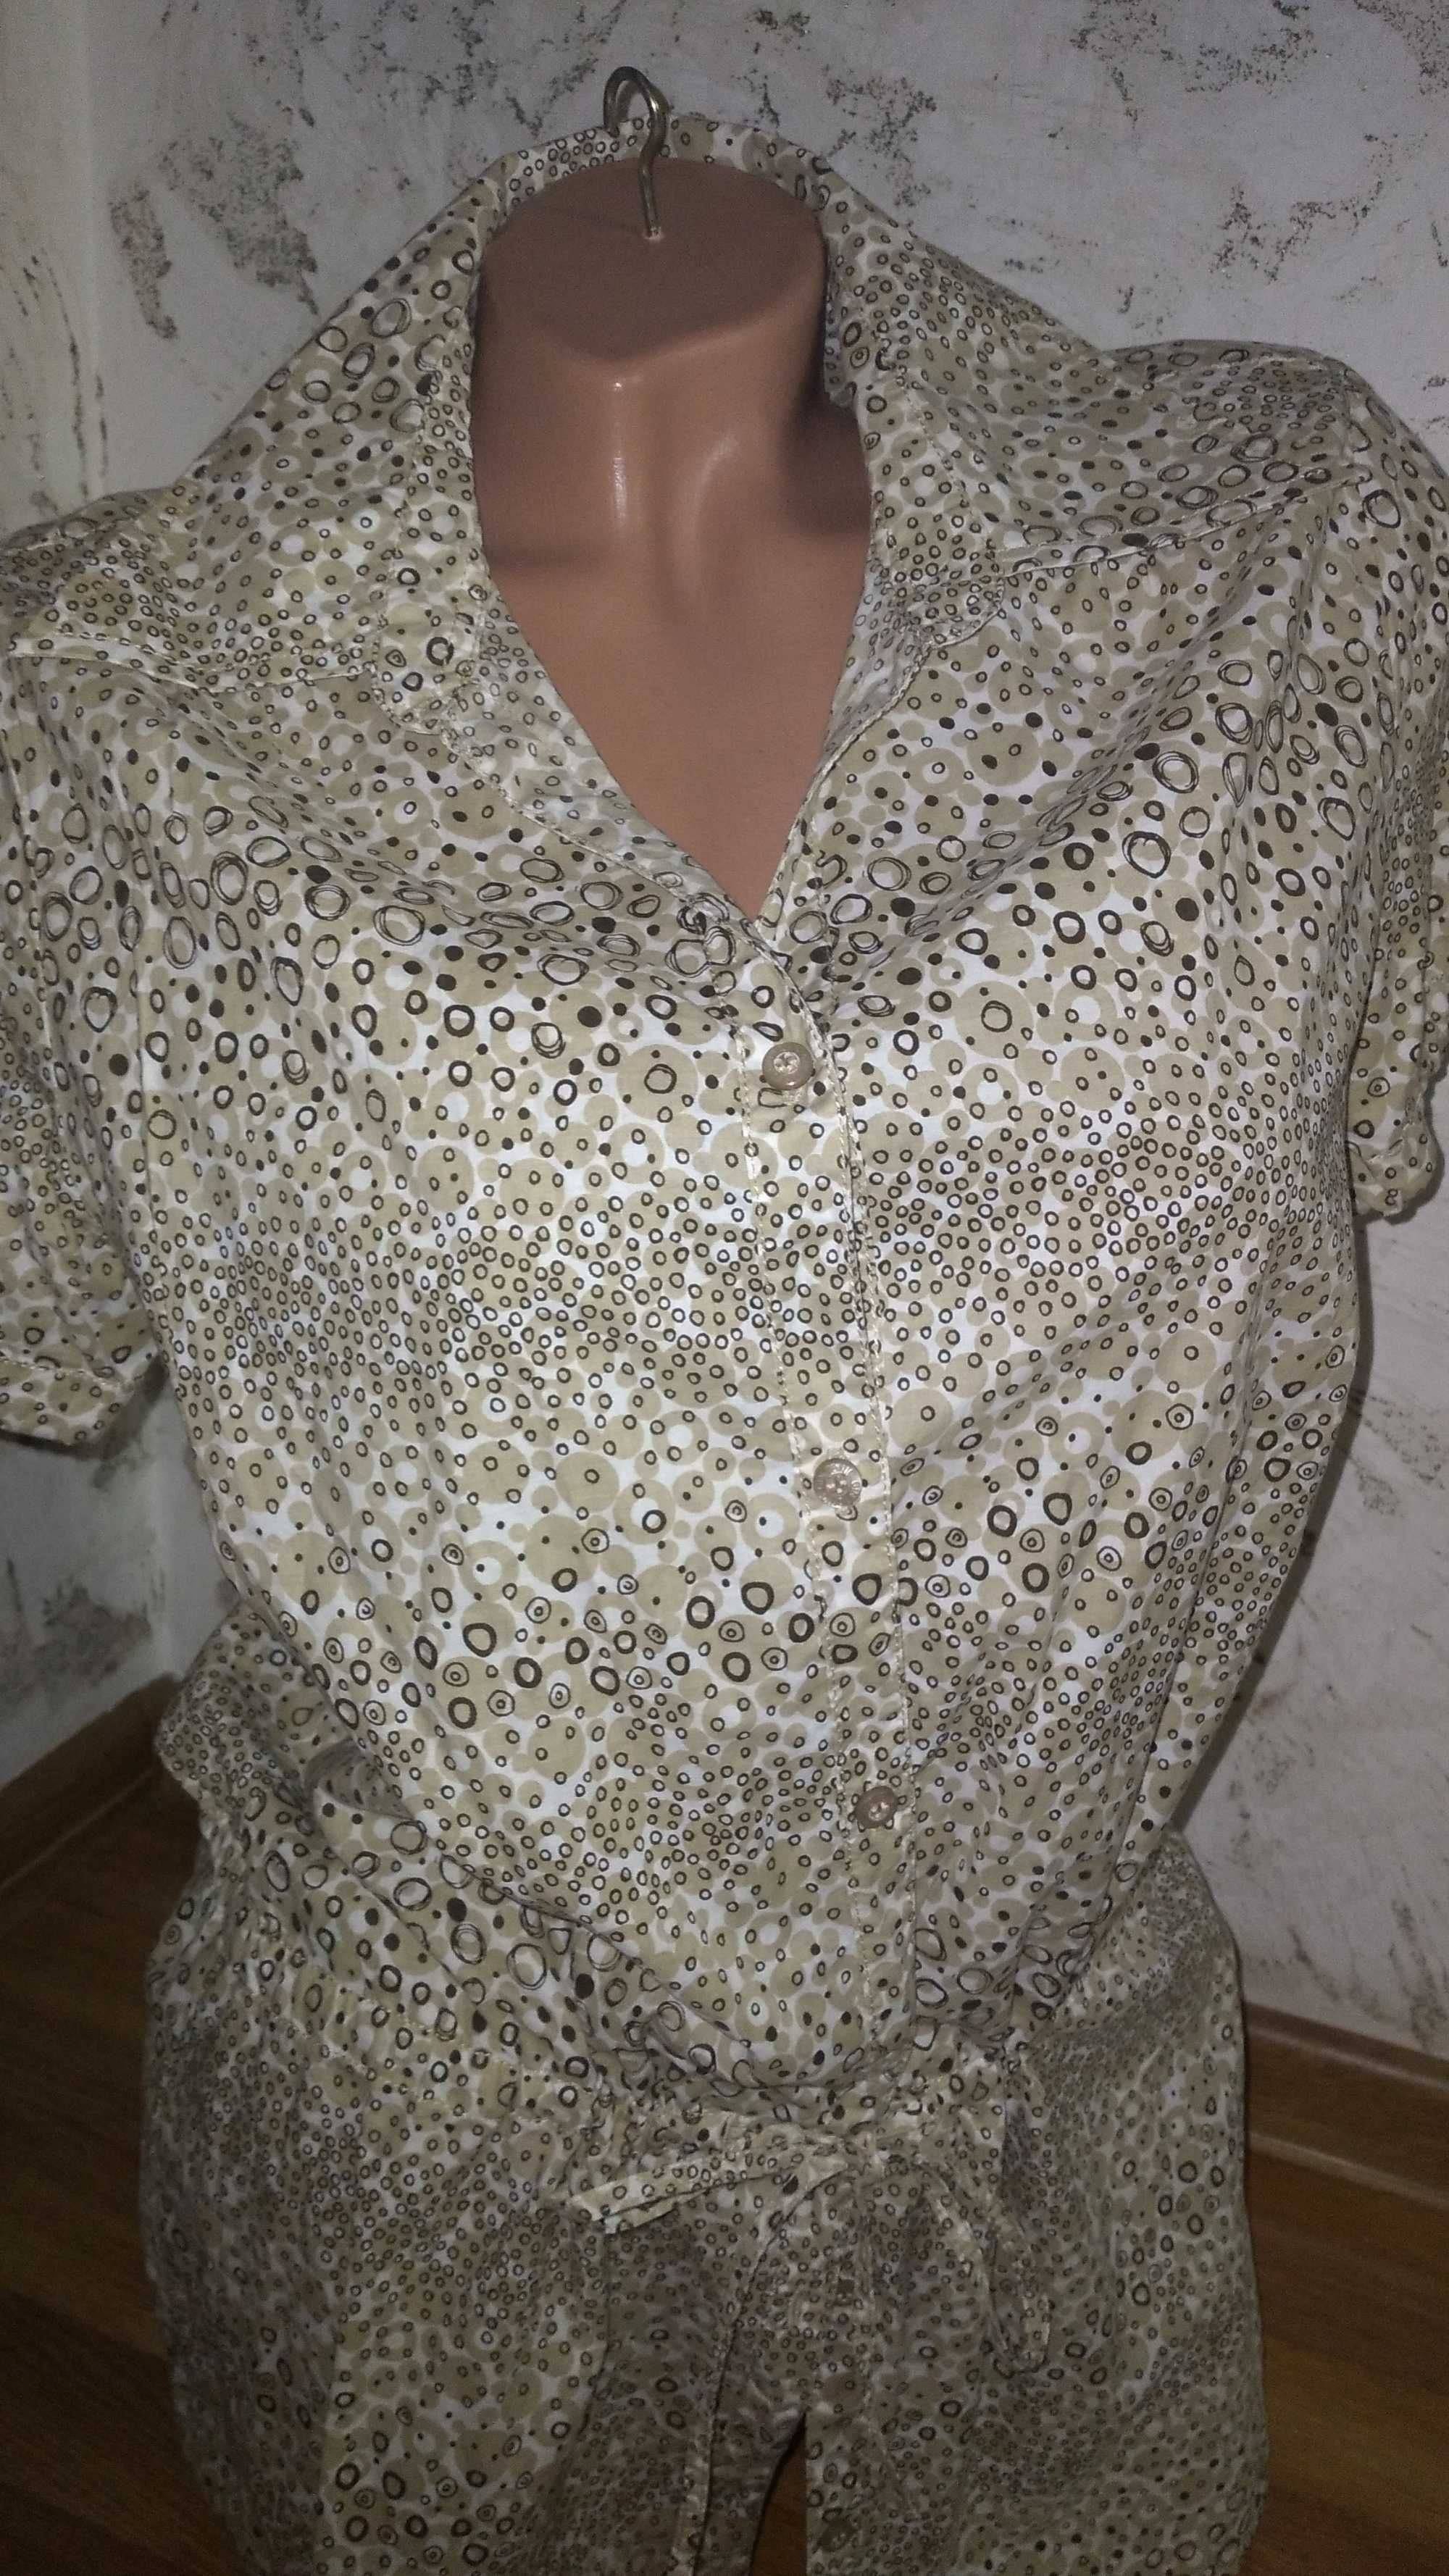 Блузка Блуза удлиненная летняя х б 46р. М 38р.Мелкий рисунок